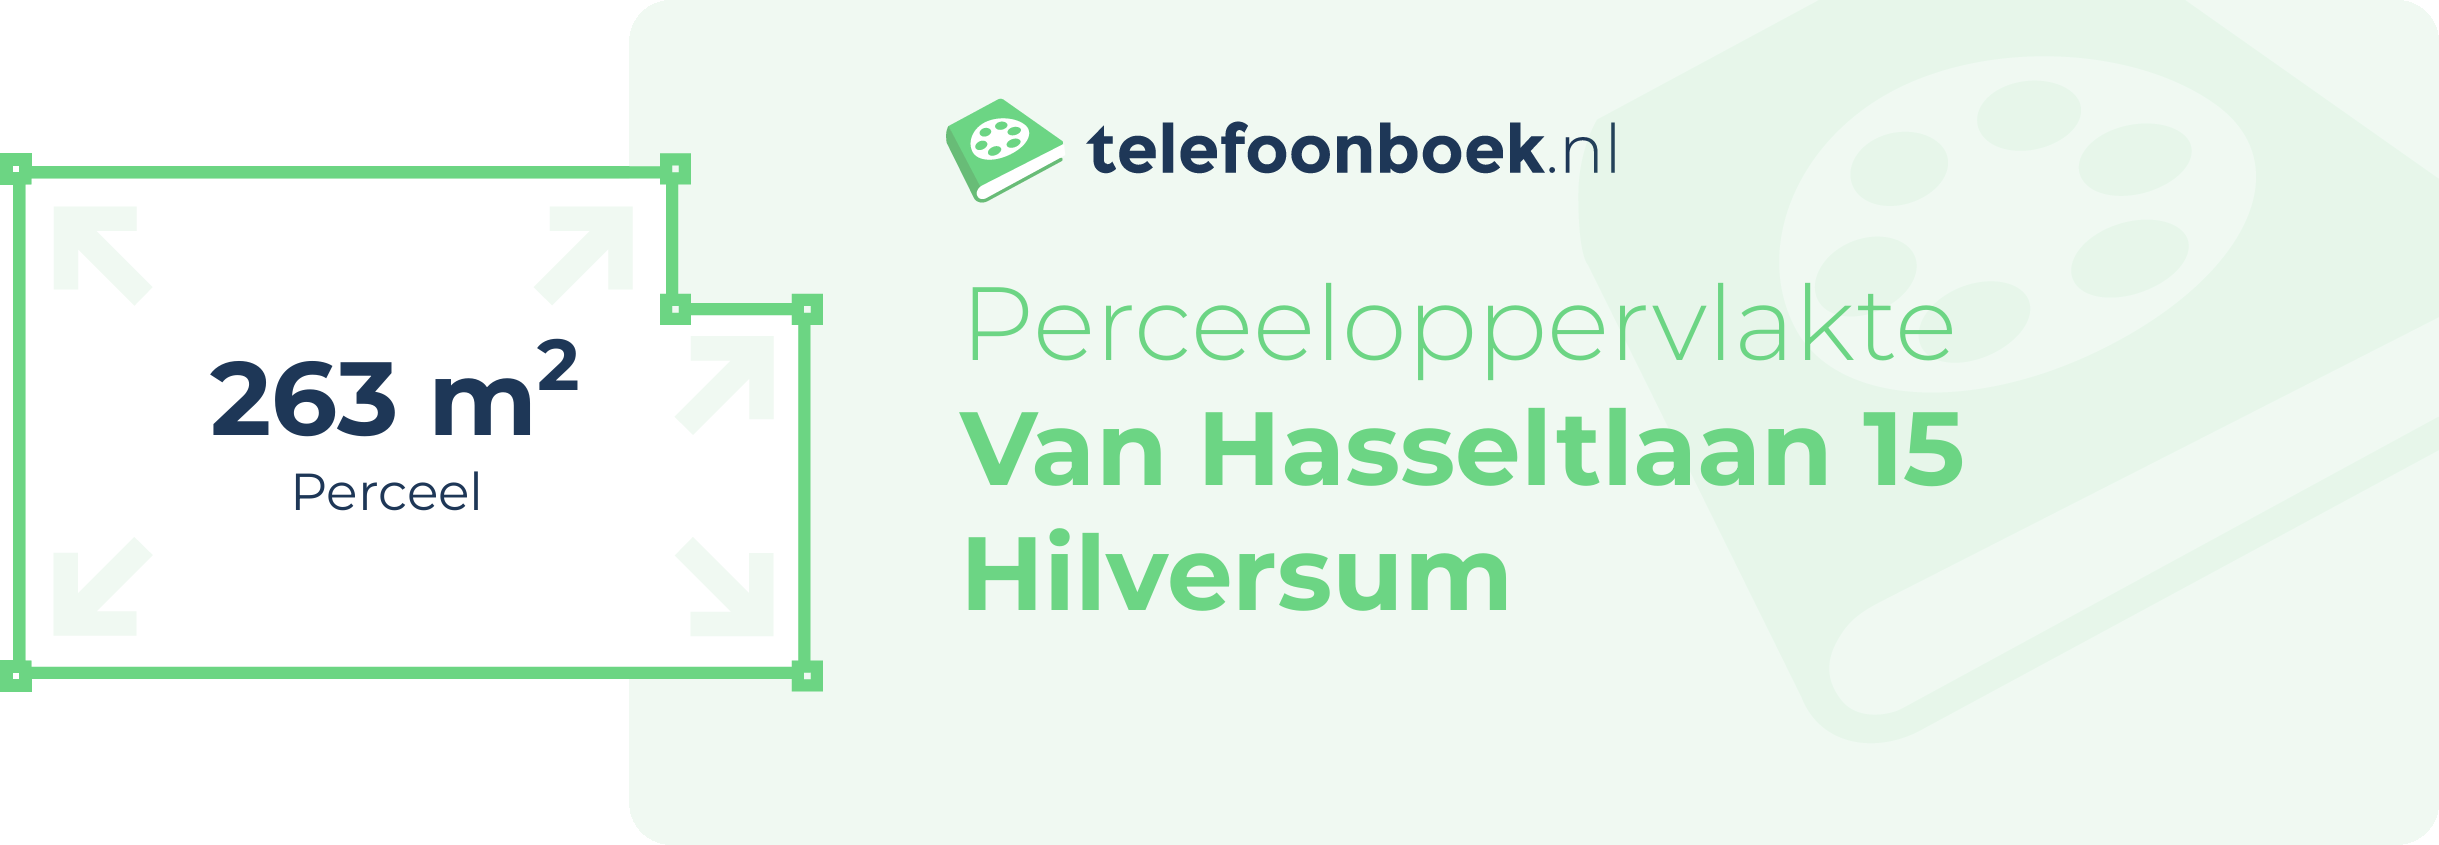 Perceeloppervlakte Van Hasseltlaan 15 Hilversum